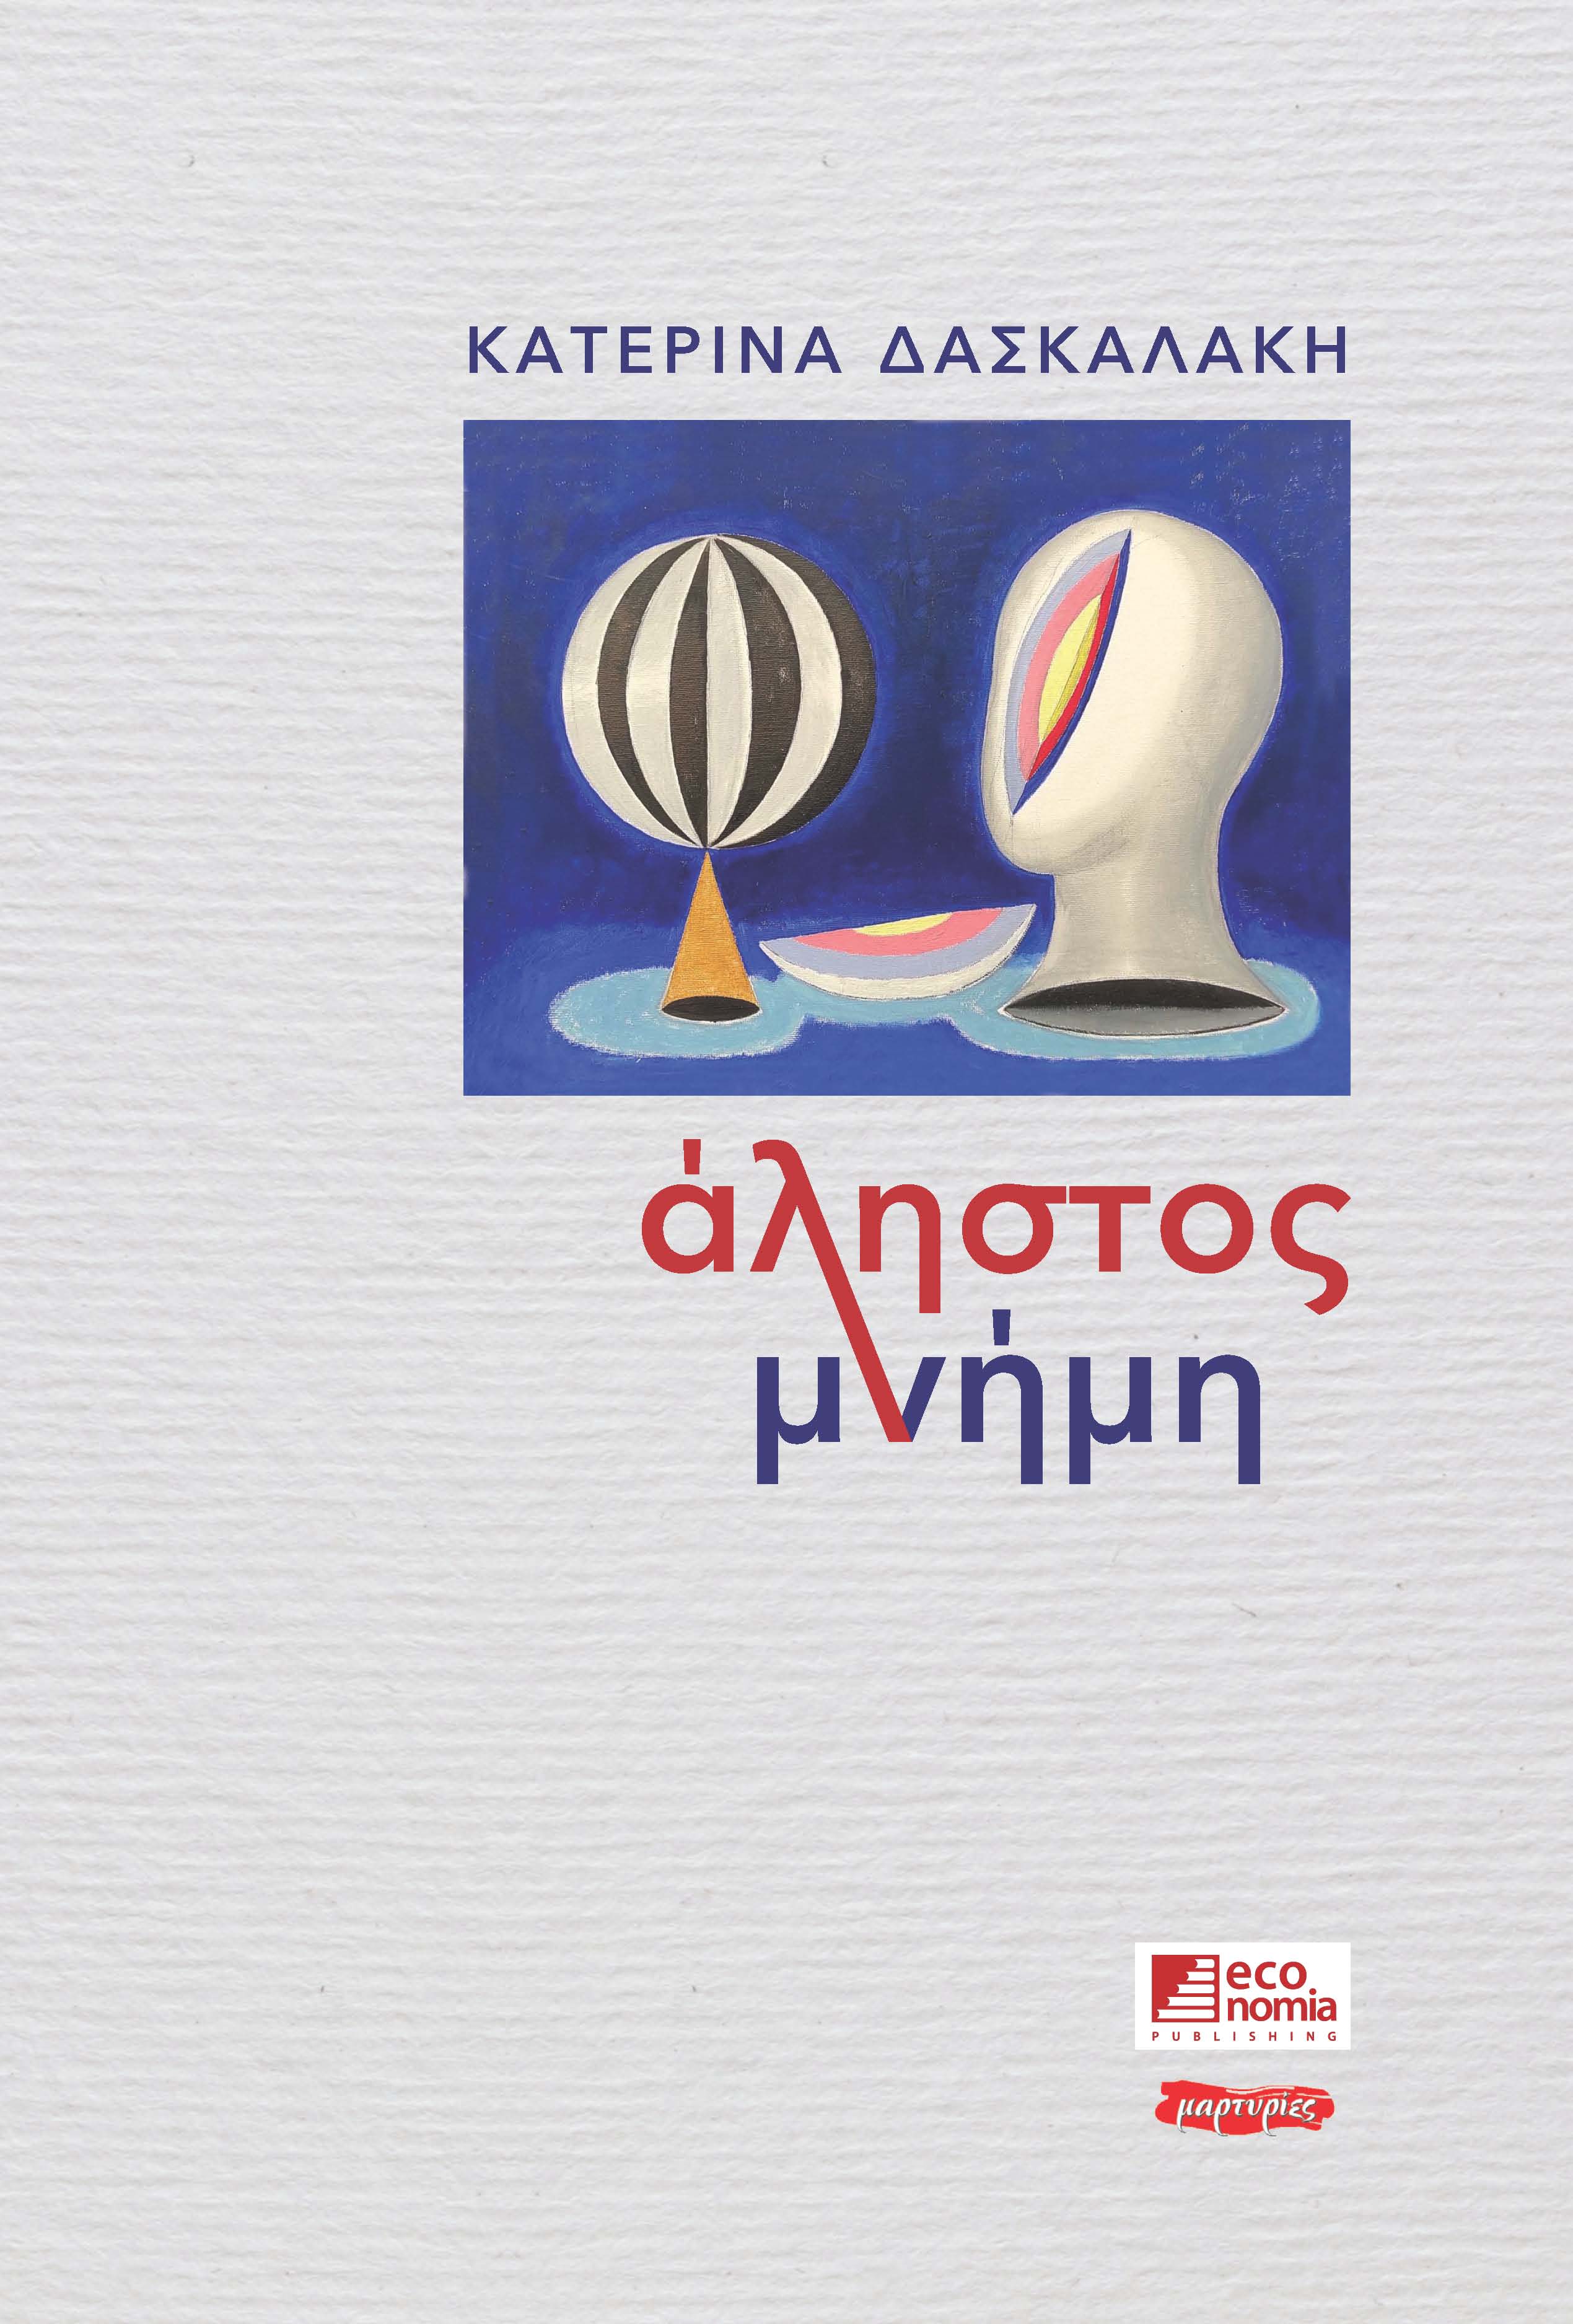 Άληστος μνήμη, , Δασκαλάκη, Κατερίνα, Εκδόσεις Κέρκυρα - Economia Publishing, 2020